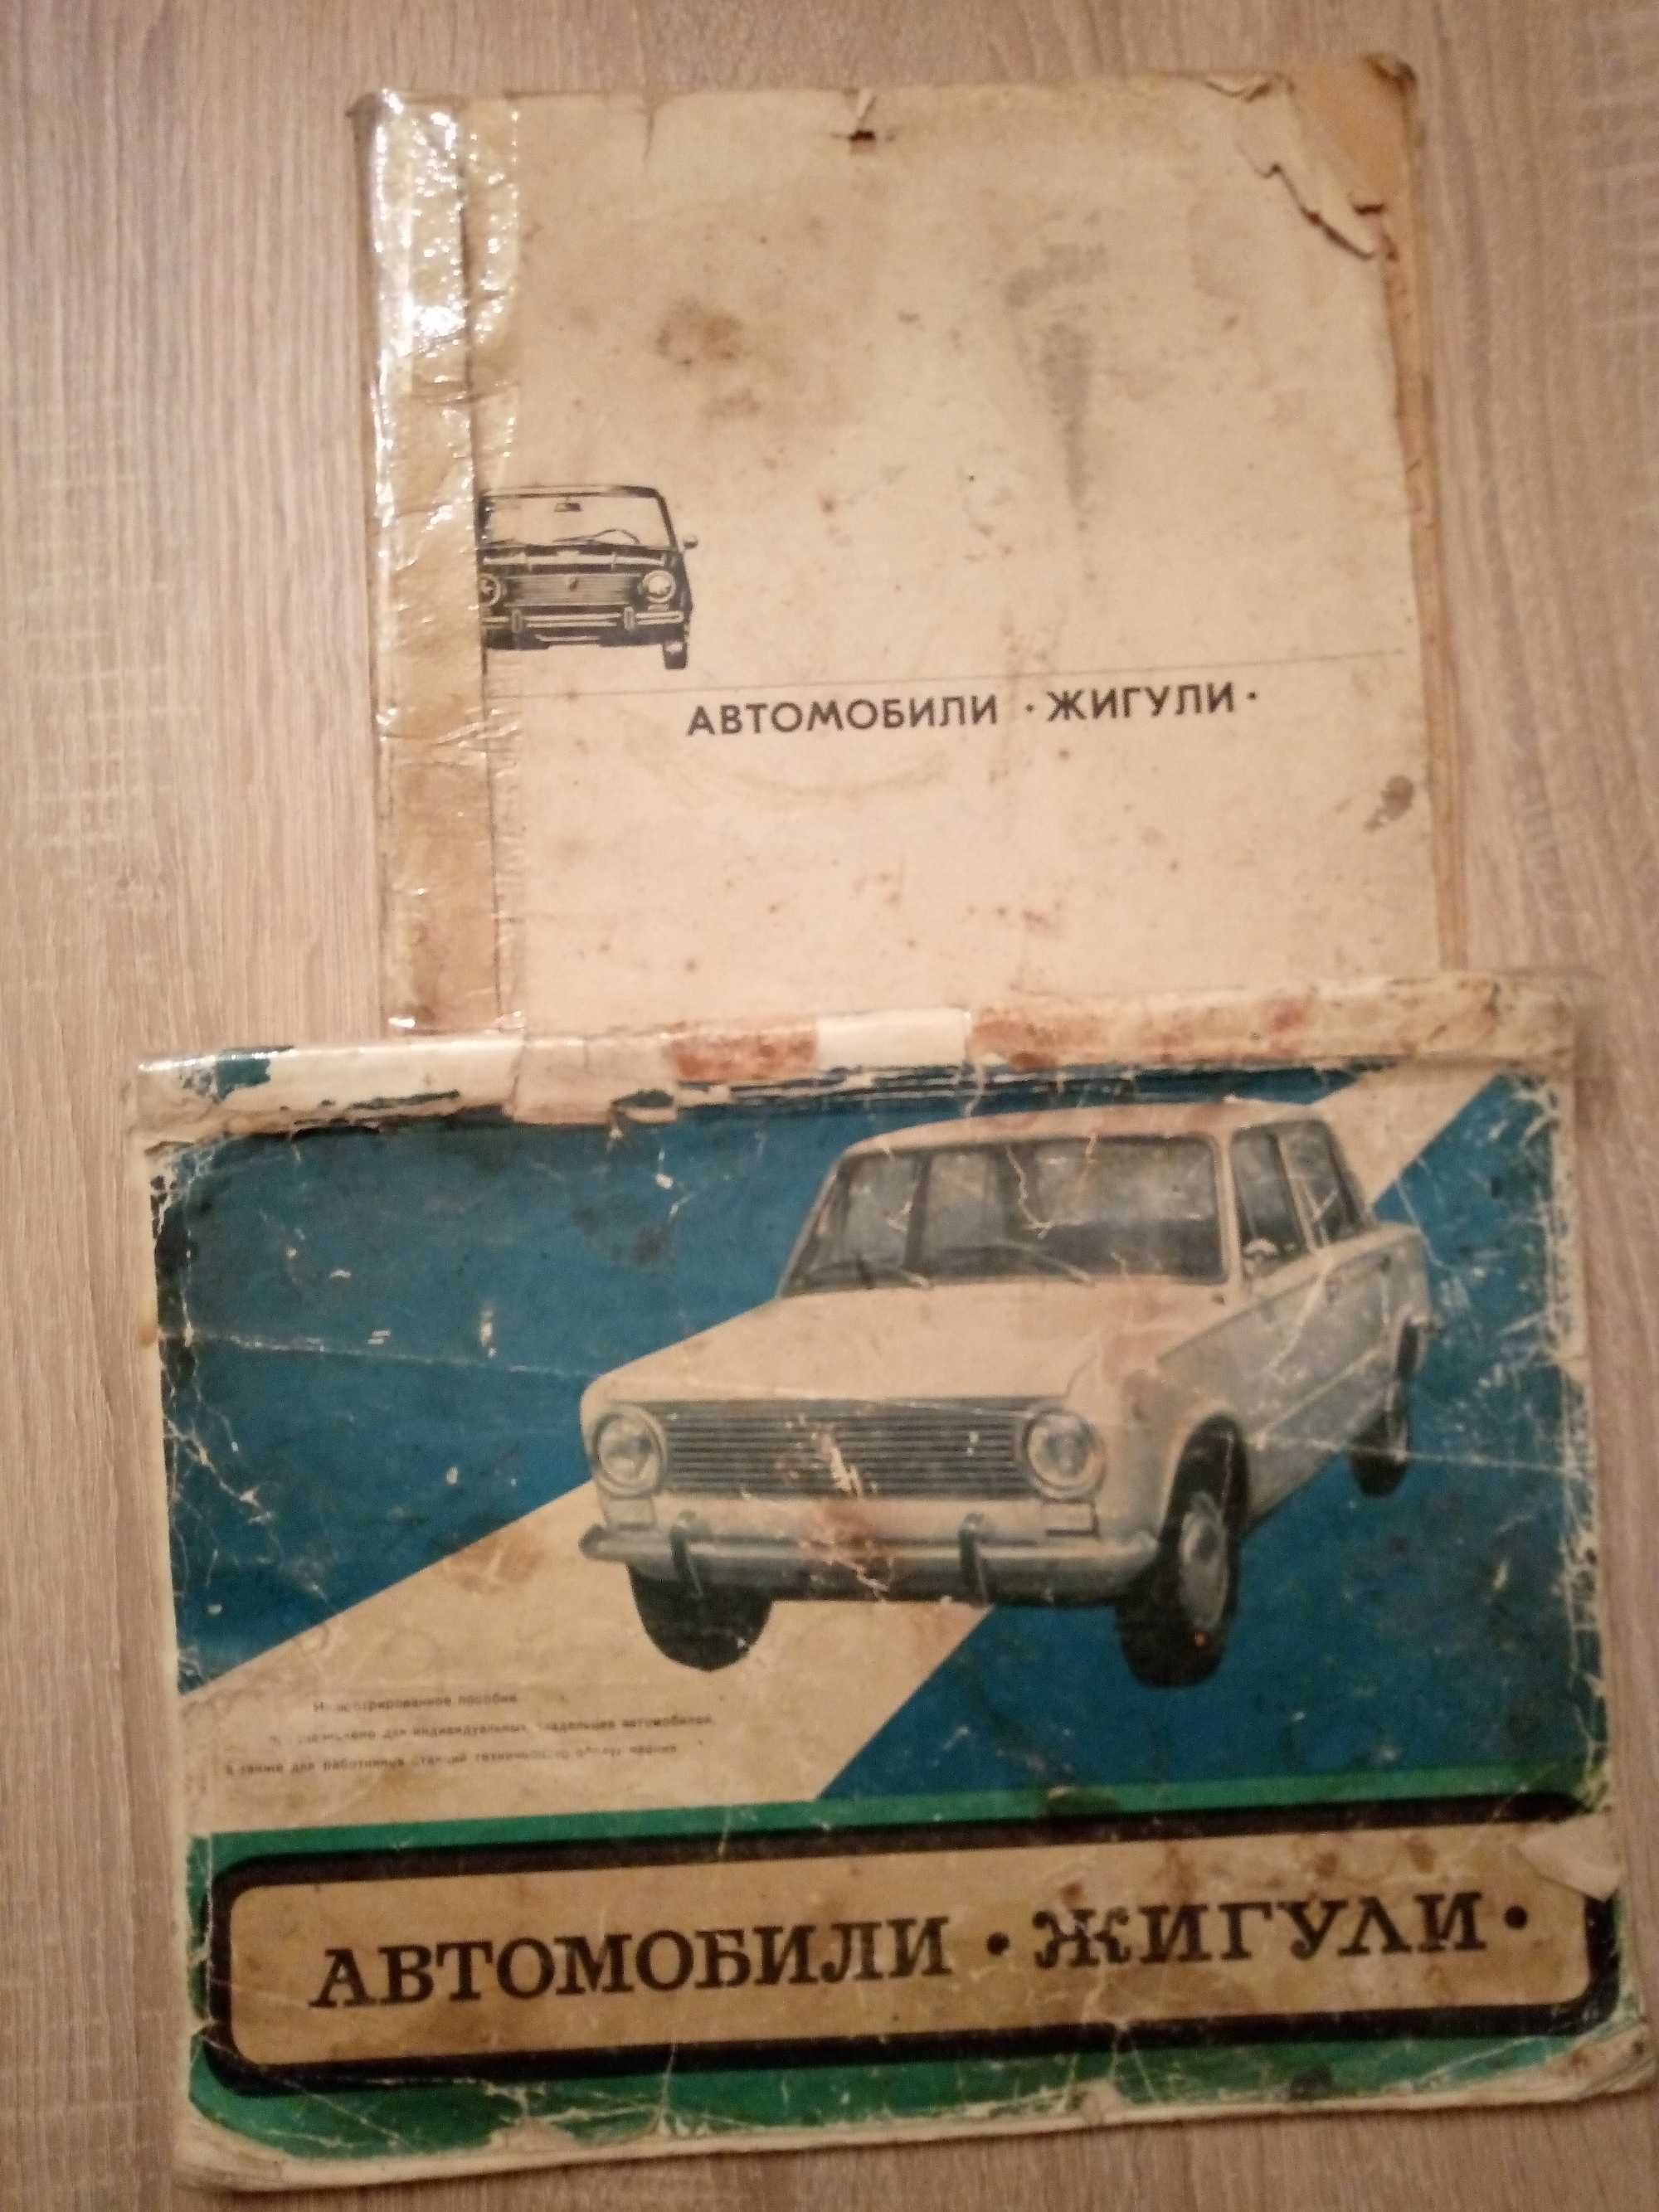 Автомобили. Жигули. Иллюстрированное пособие.1977.СССР